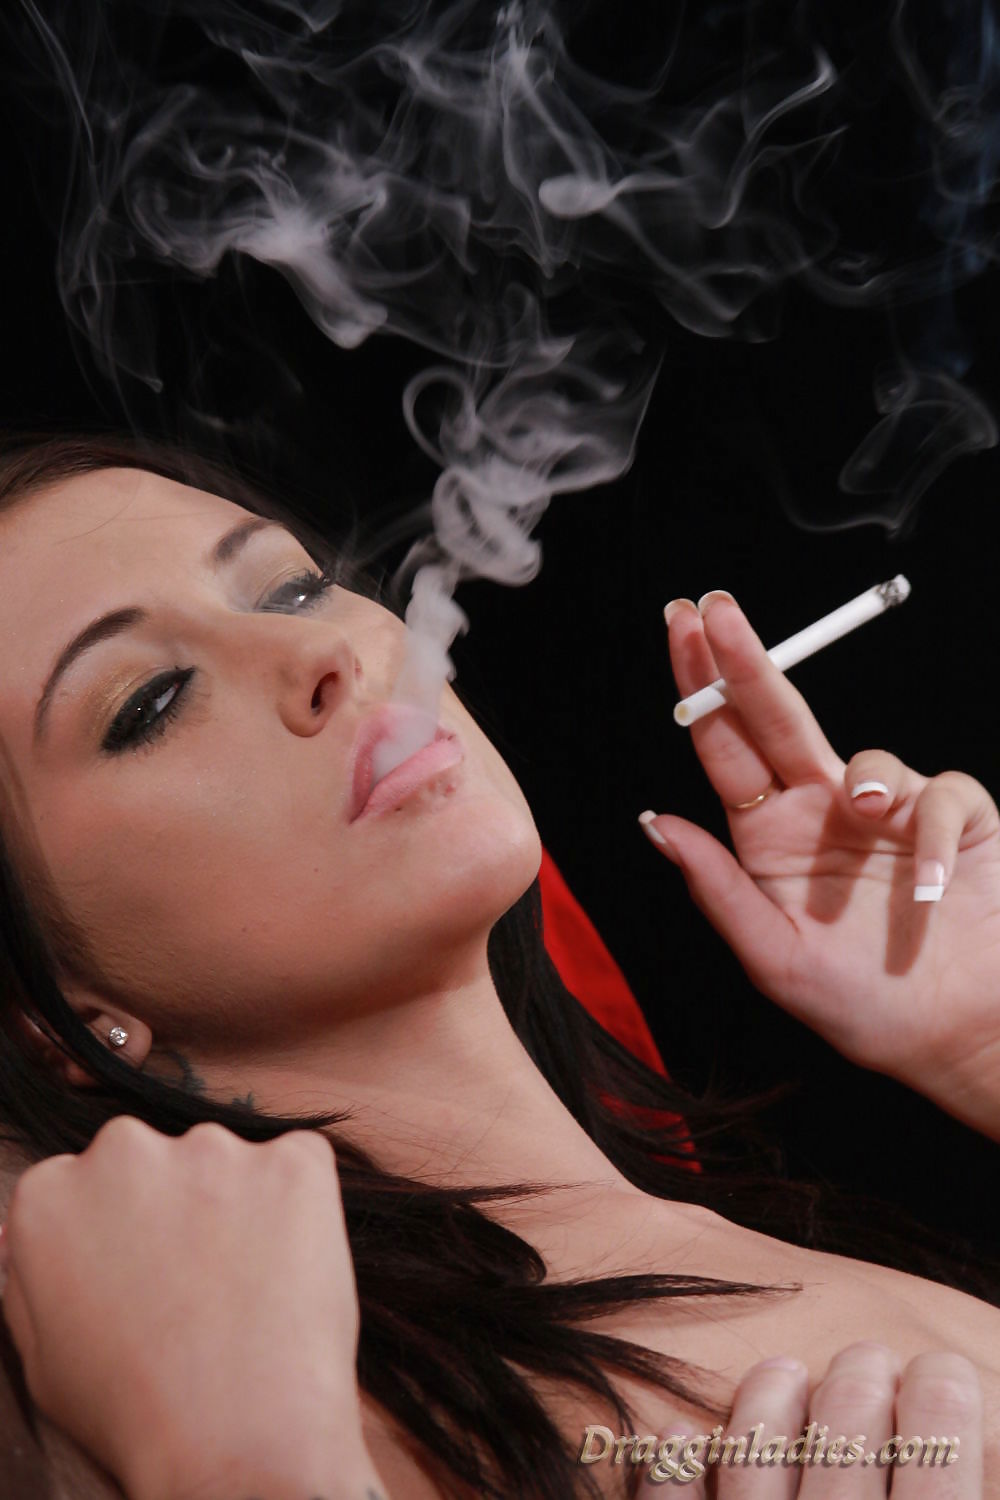 Alexis grace - fetiche de fumar en dragginladies
 #6304547